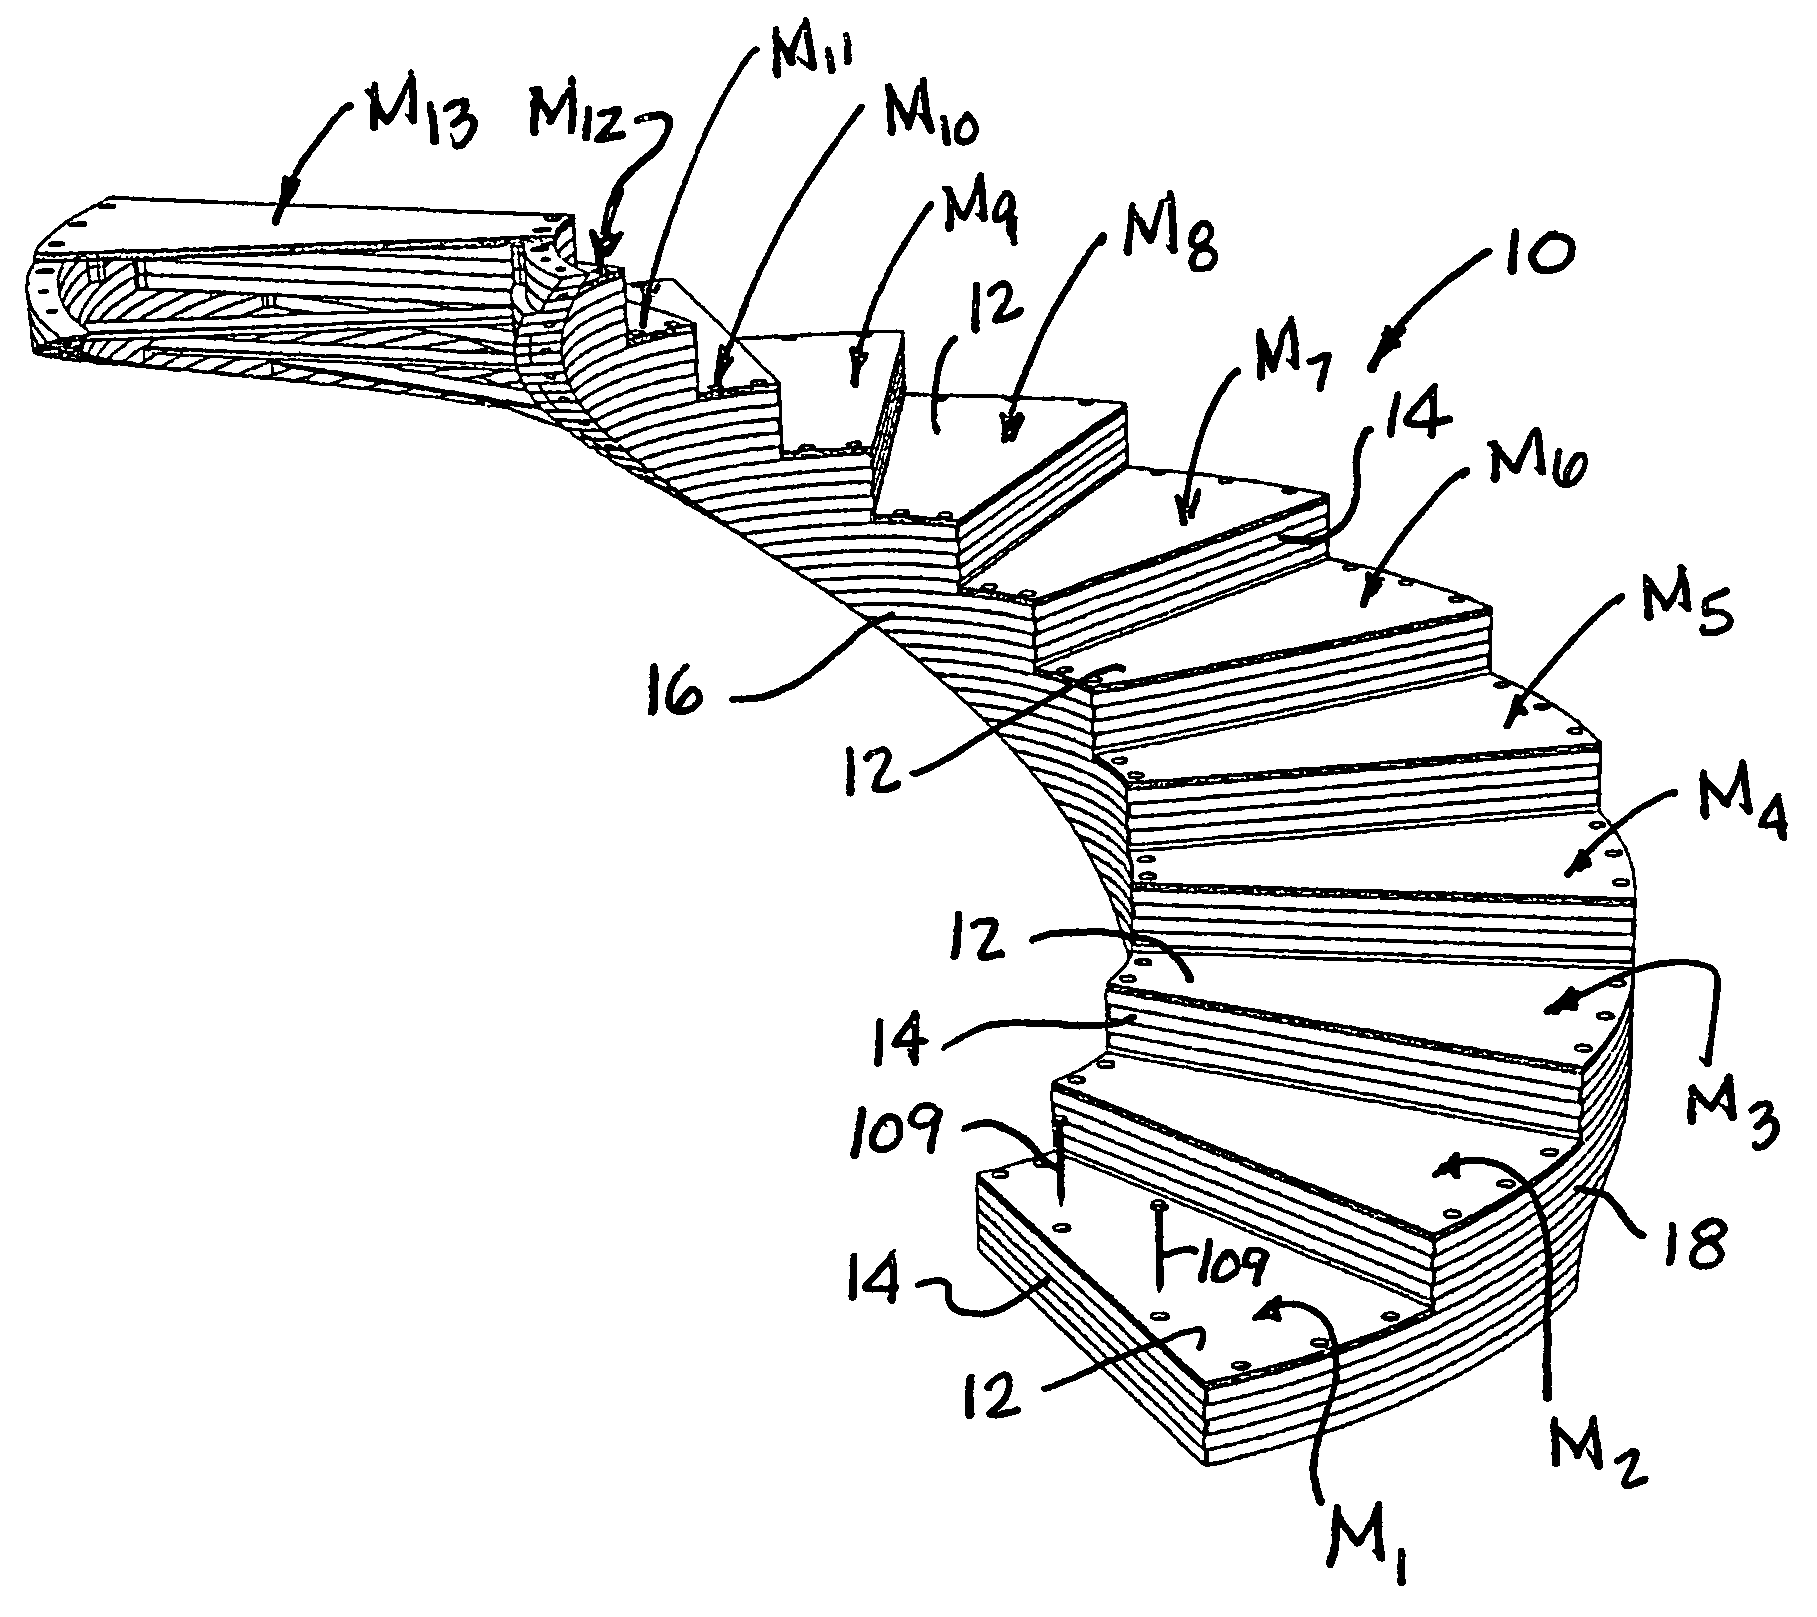 Modular staircase construction